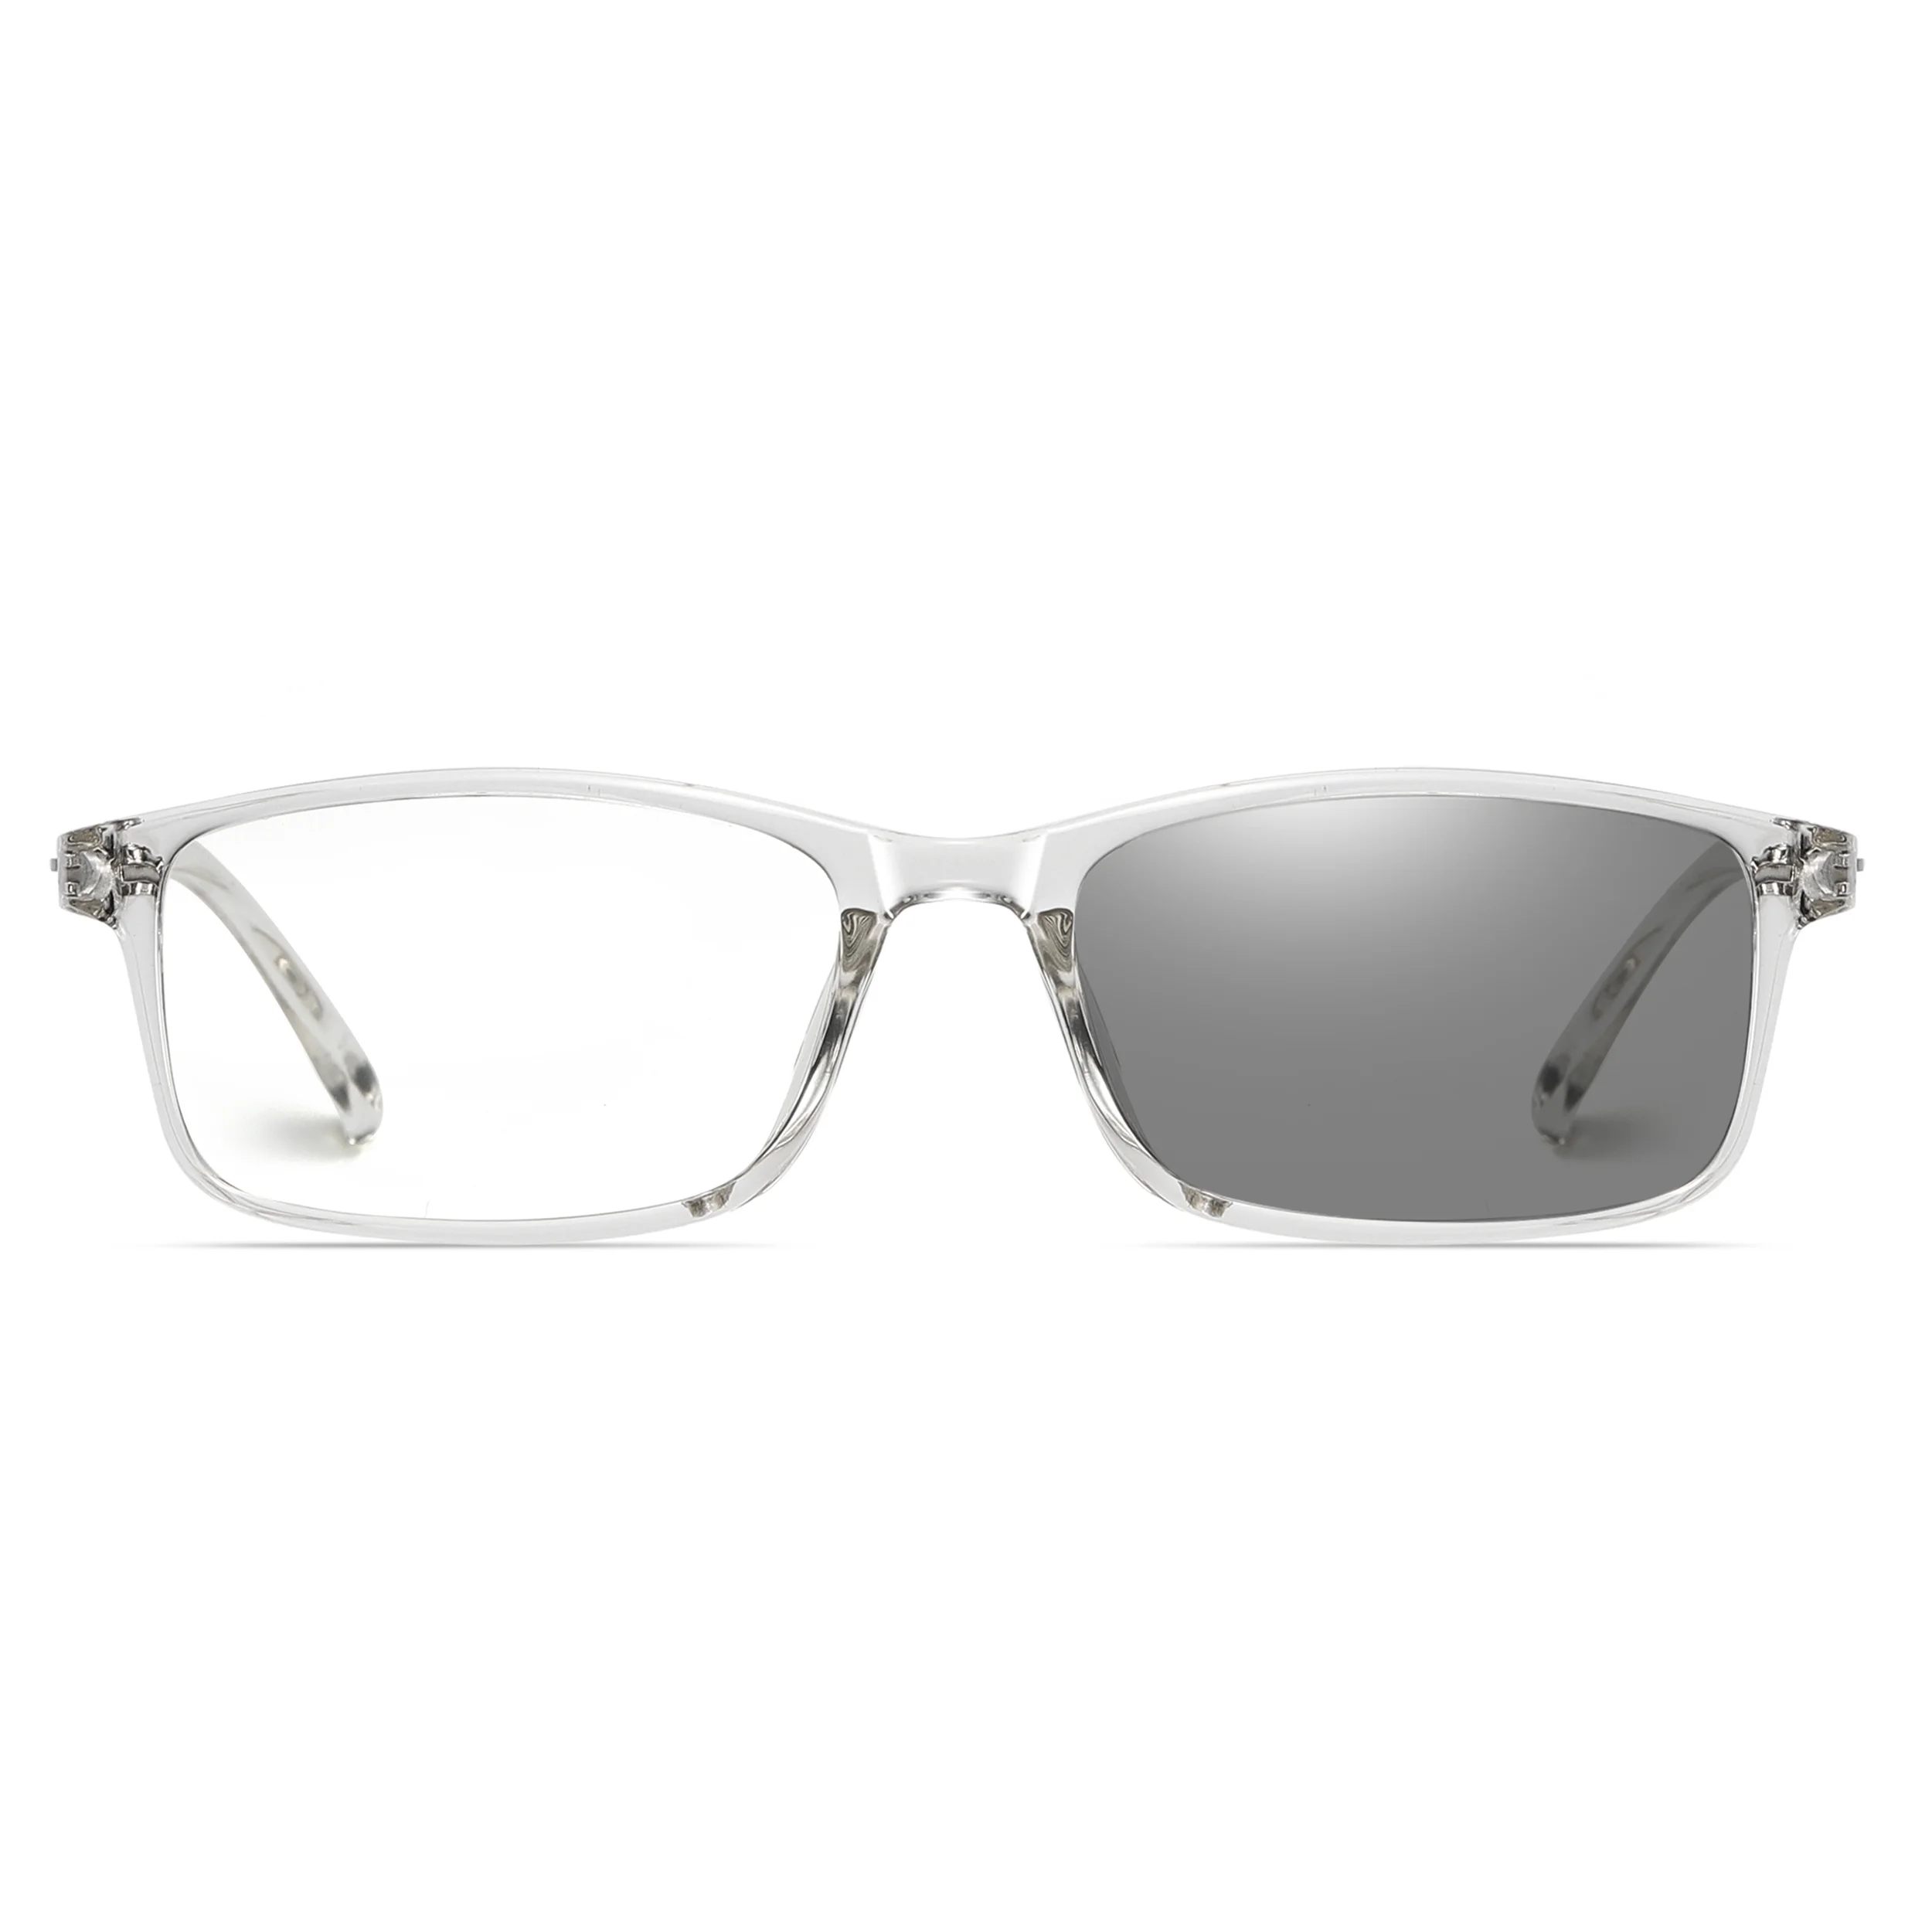 

Lens Tr90 Reading Eye Spectacle Eyeglasses Blue Light Blocking River Eyewear Men Frame Optical Glasses, 3 colors